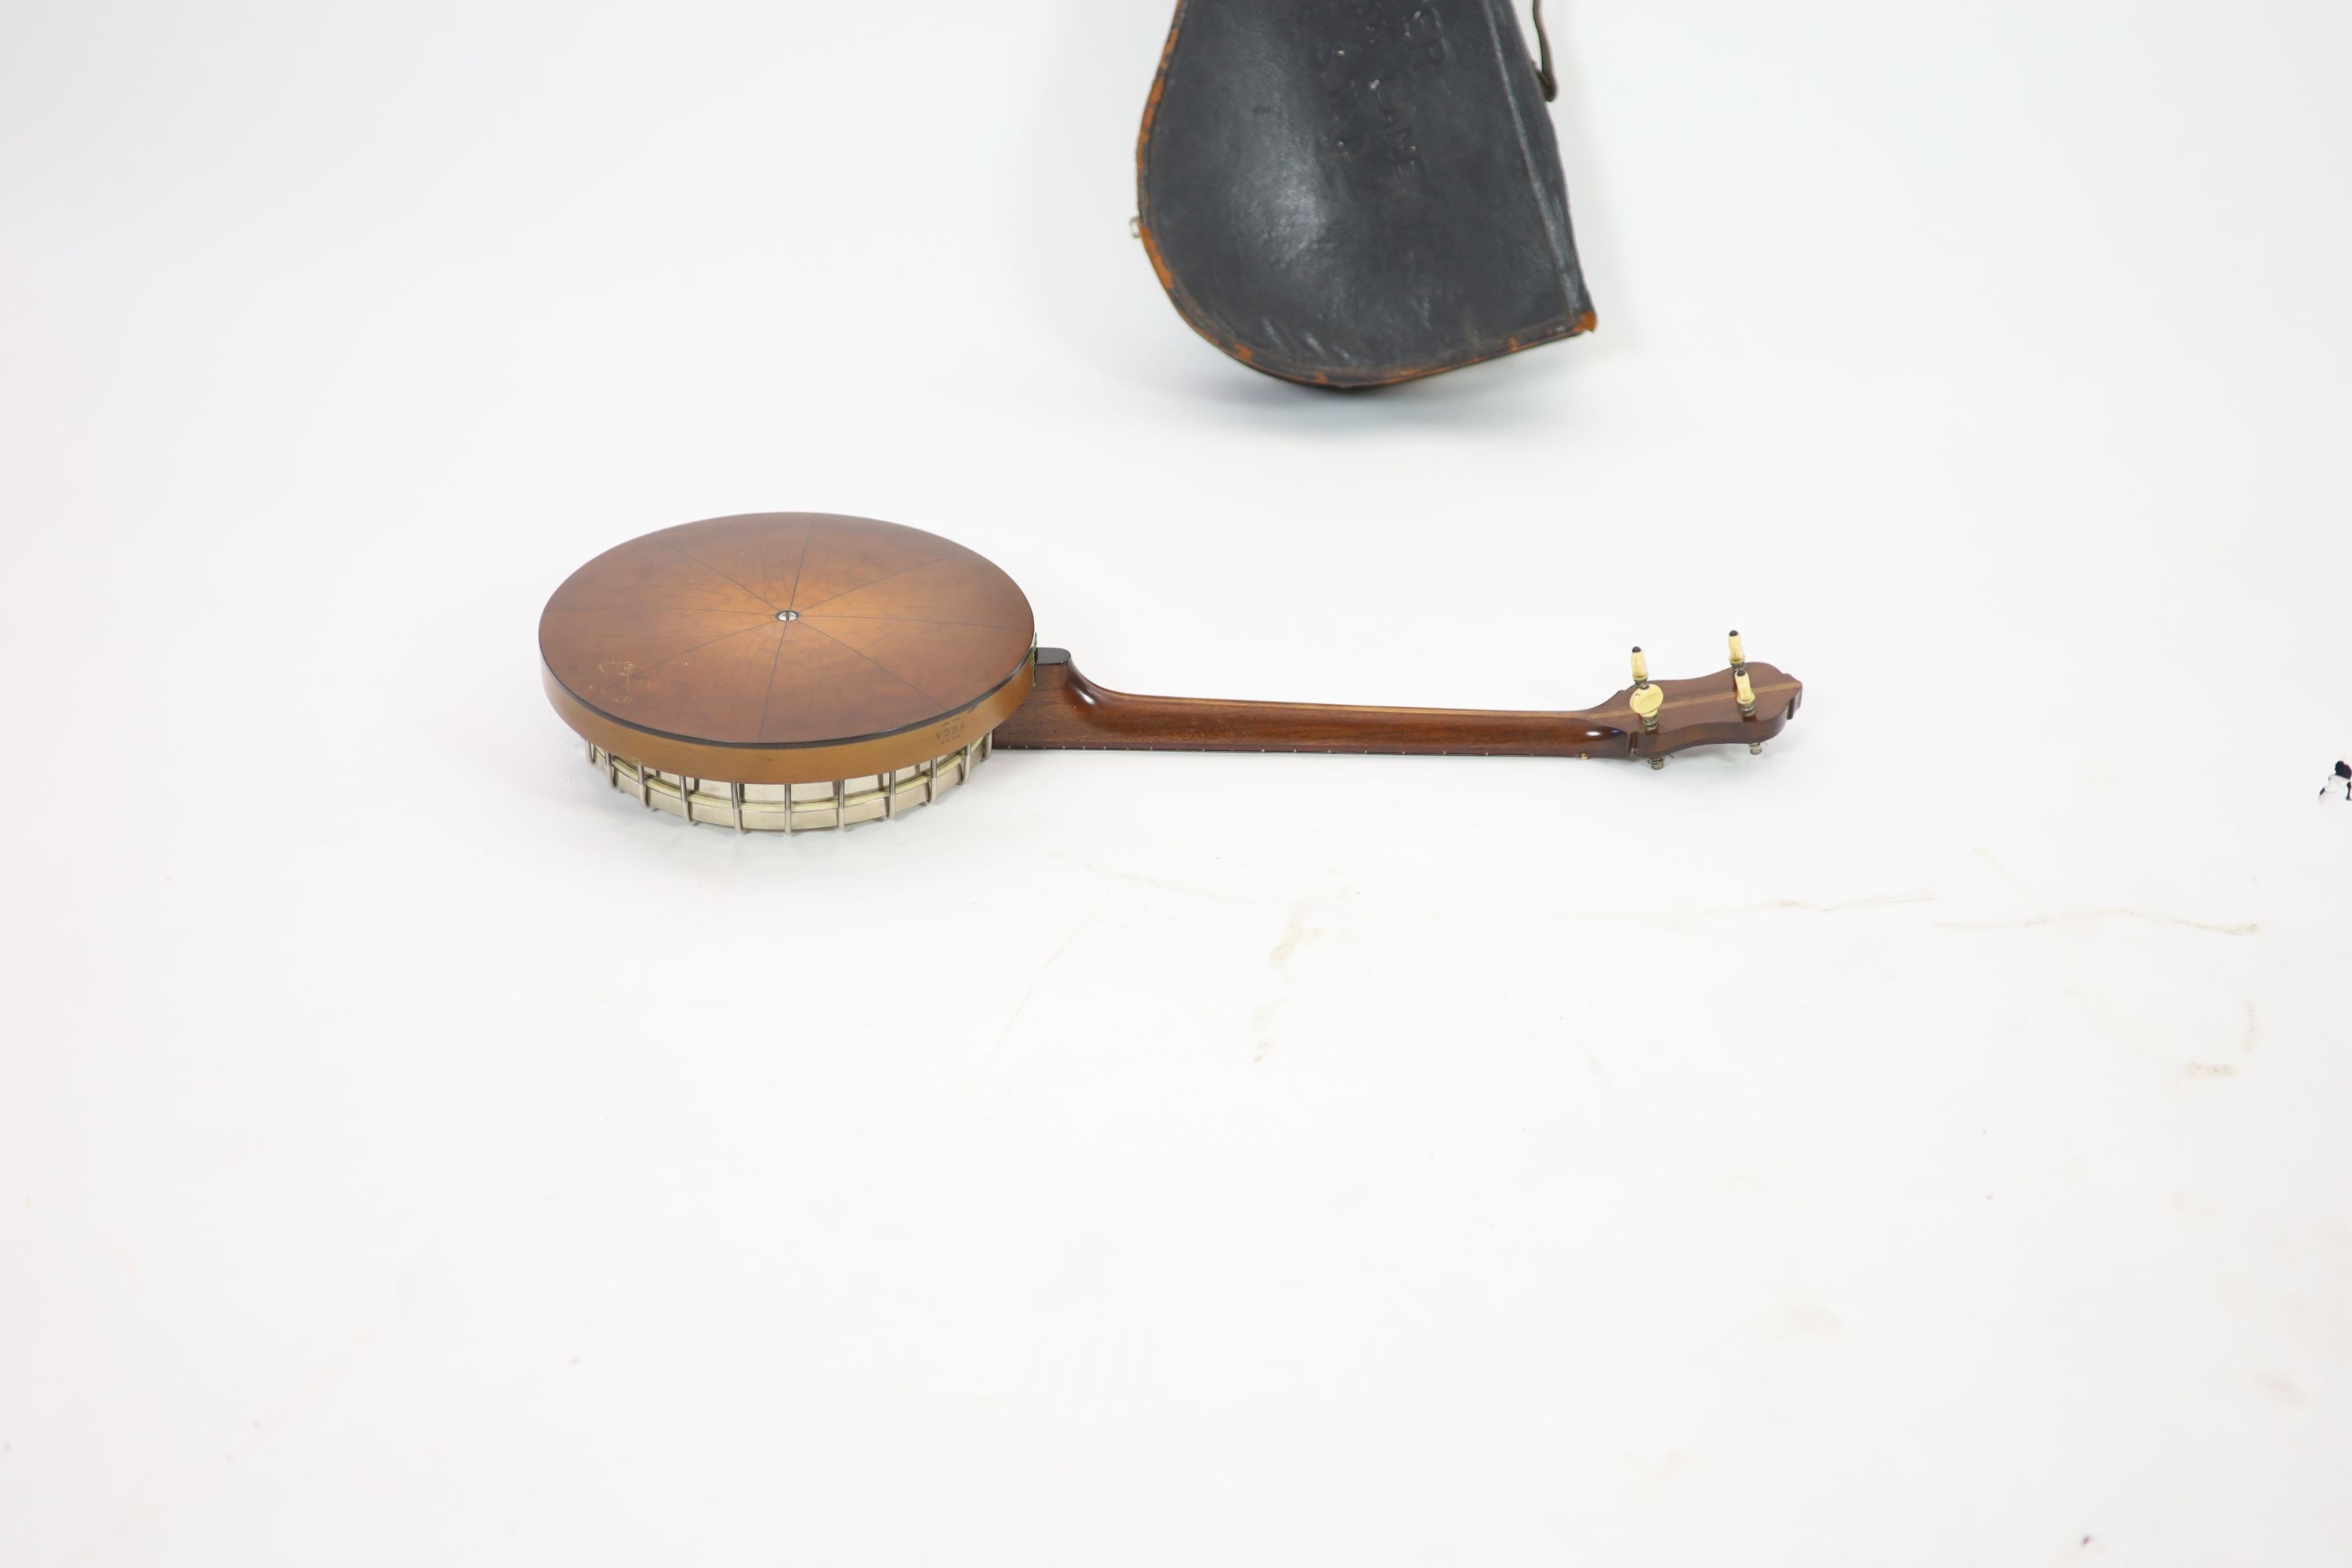 A Vega banjo, length 81cm